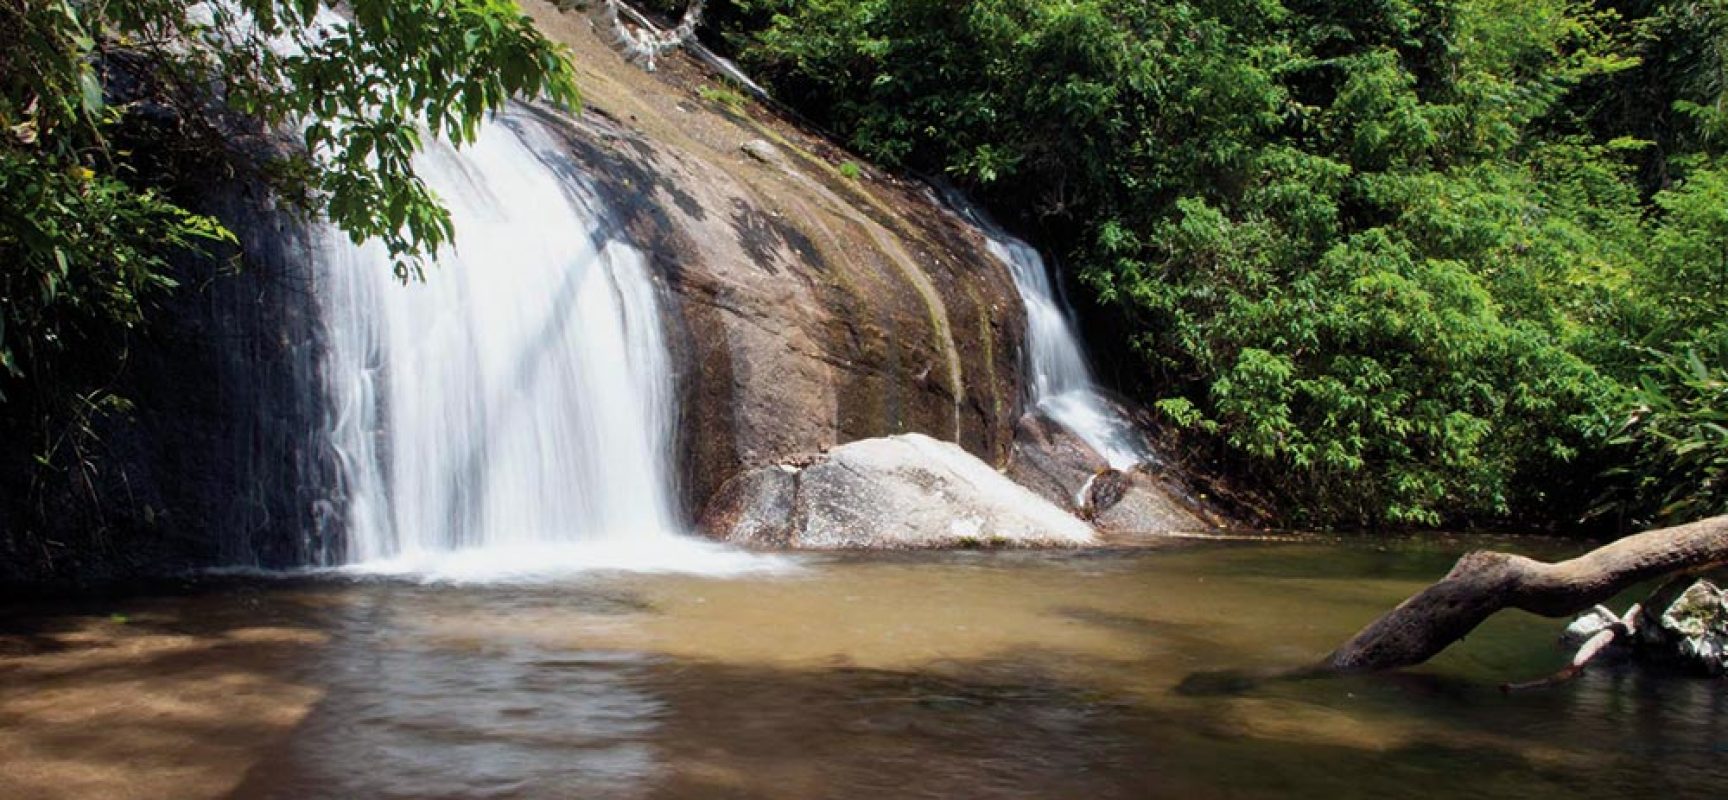 Ecoturismo – Aventure-se na mata entre rios e cachoeiras